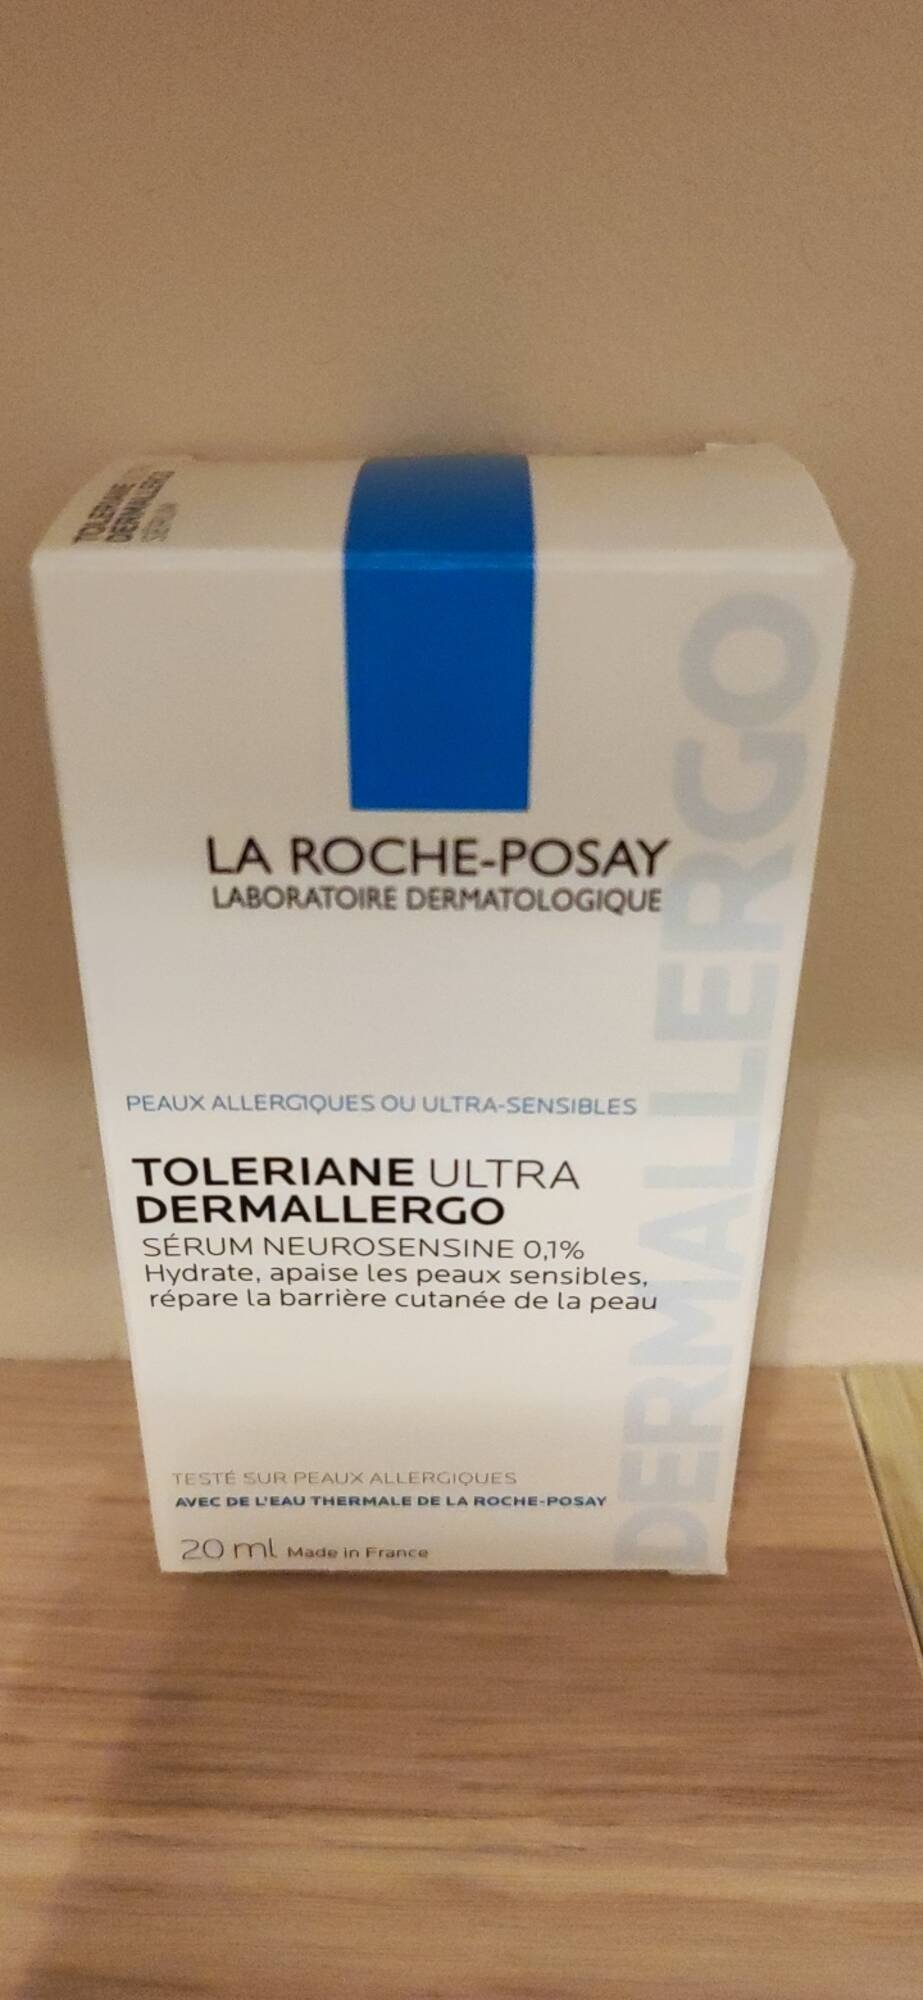 LA ROCHE-POSAY - Toleriane ultra dermallergo - Sérum neurosensine 0,1%